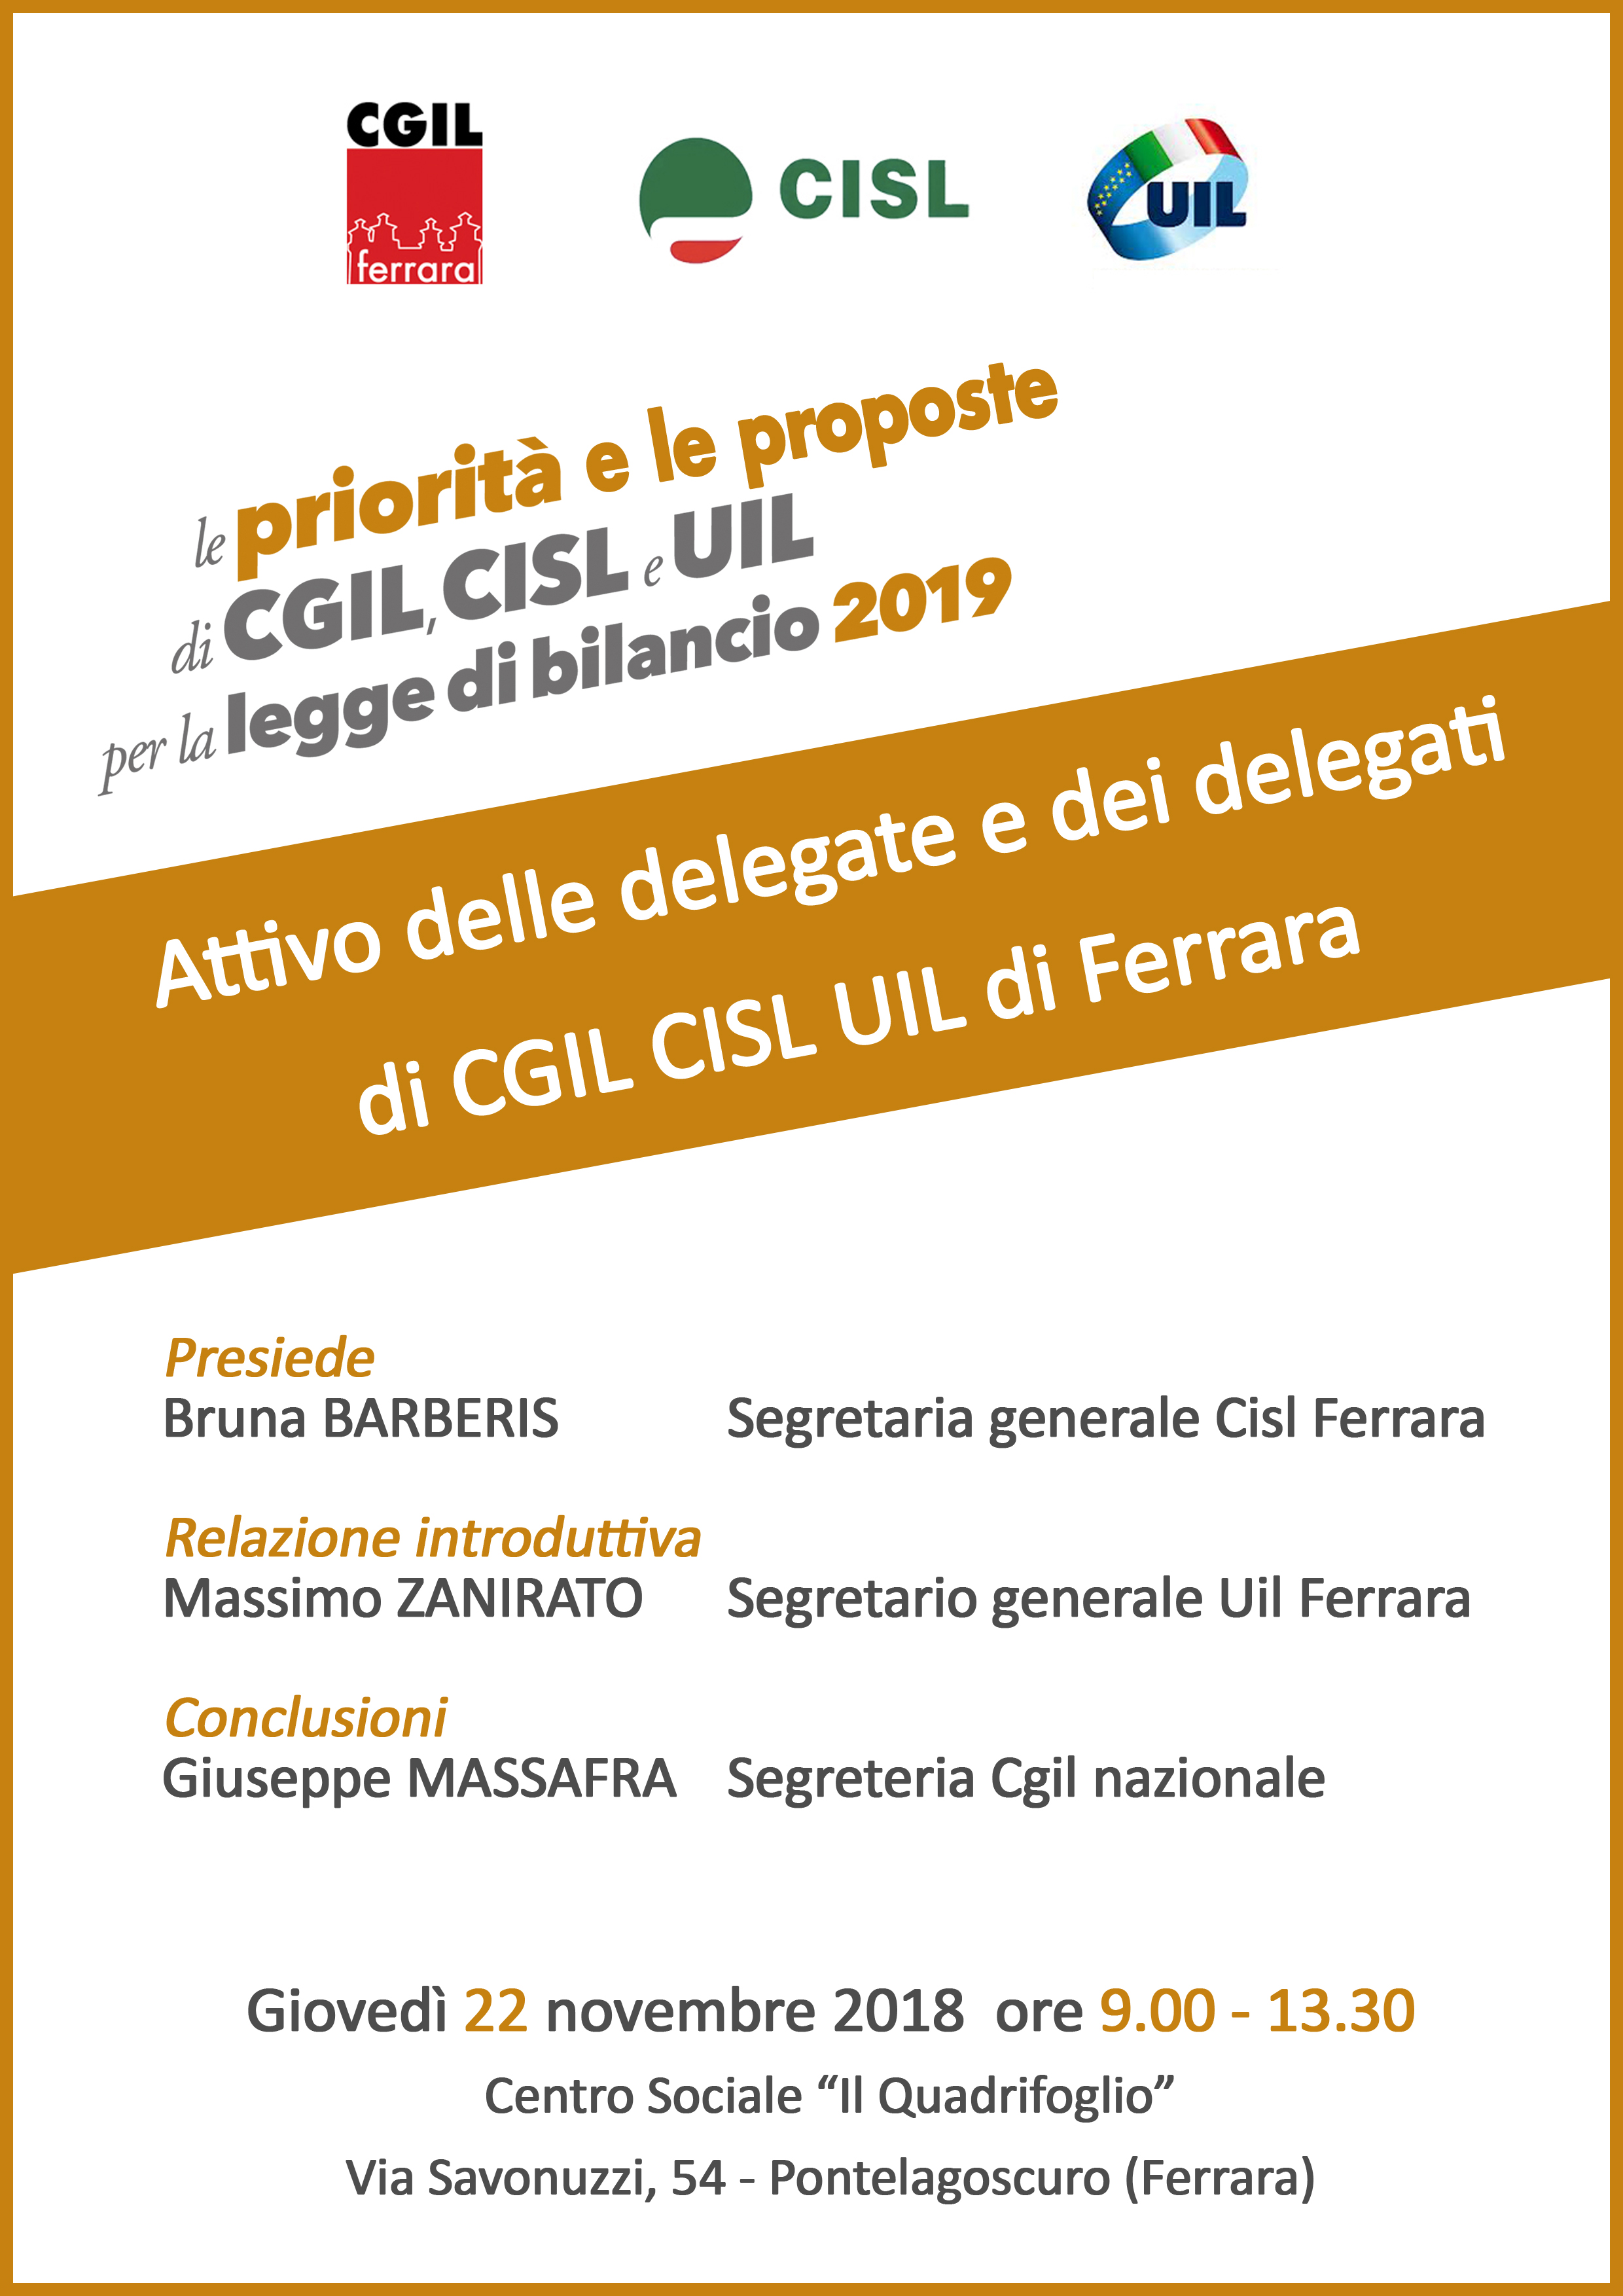 Giovedì 22 novembre attivo delle delegate e dei delegati Cgil Cisl Uil di Ferrara per legge di bilancio 2019